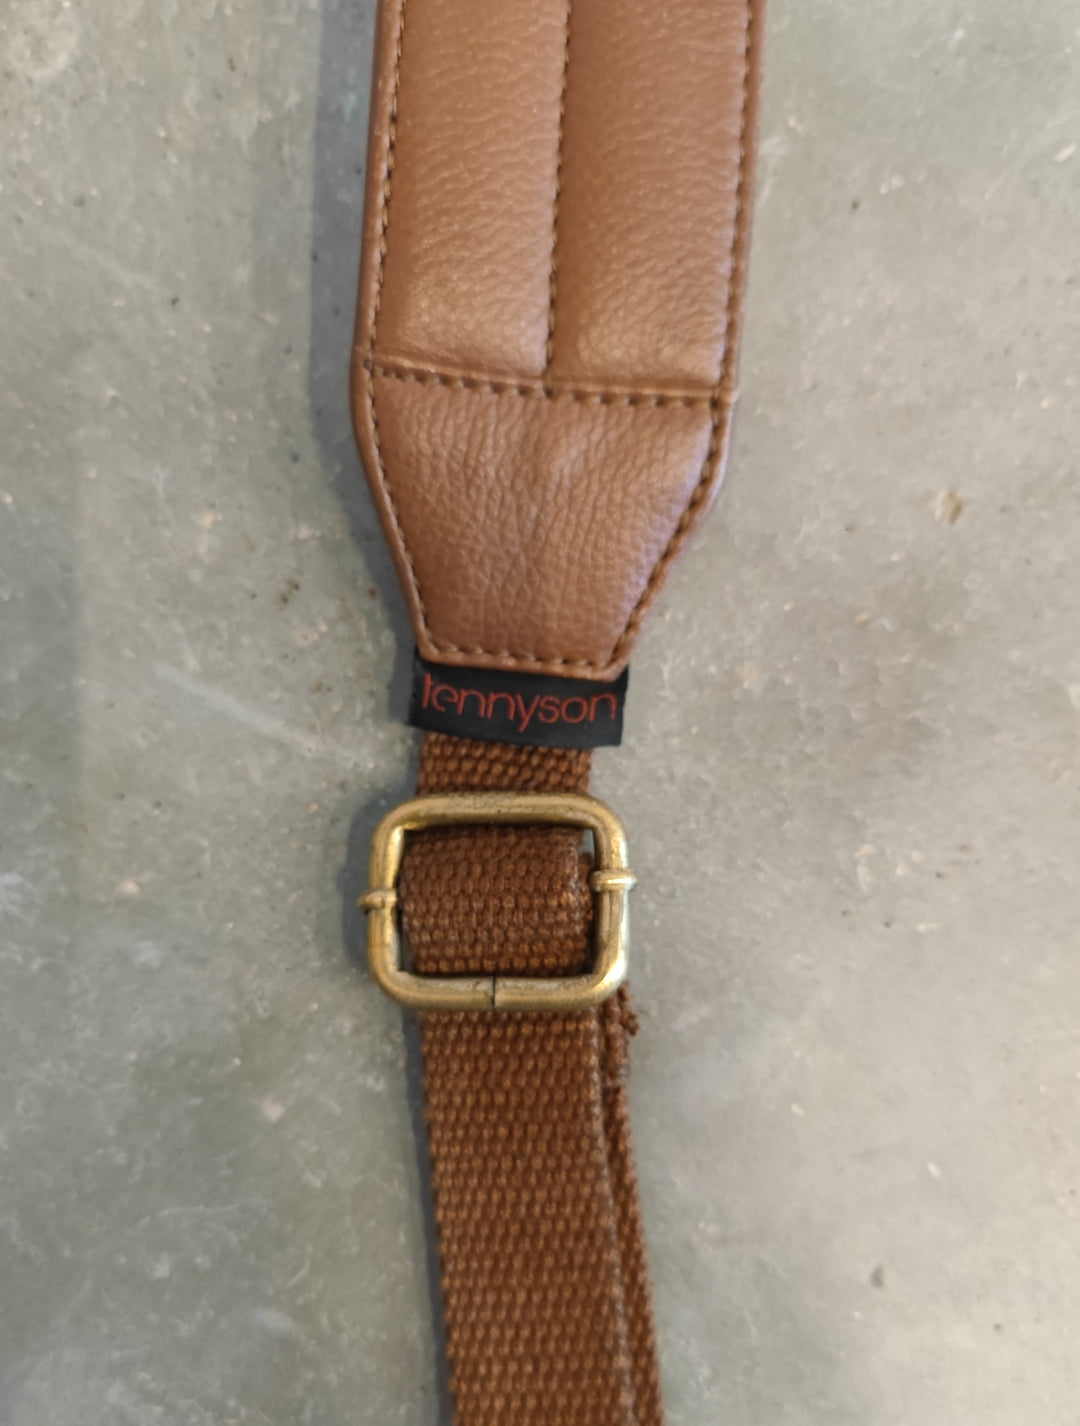 100% Leather Savage Tote/Backpack Bag - Brown